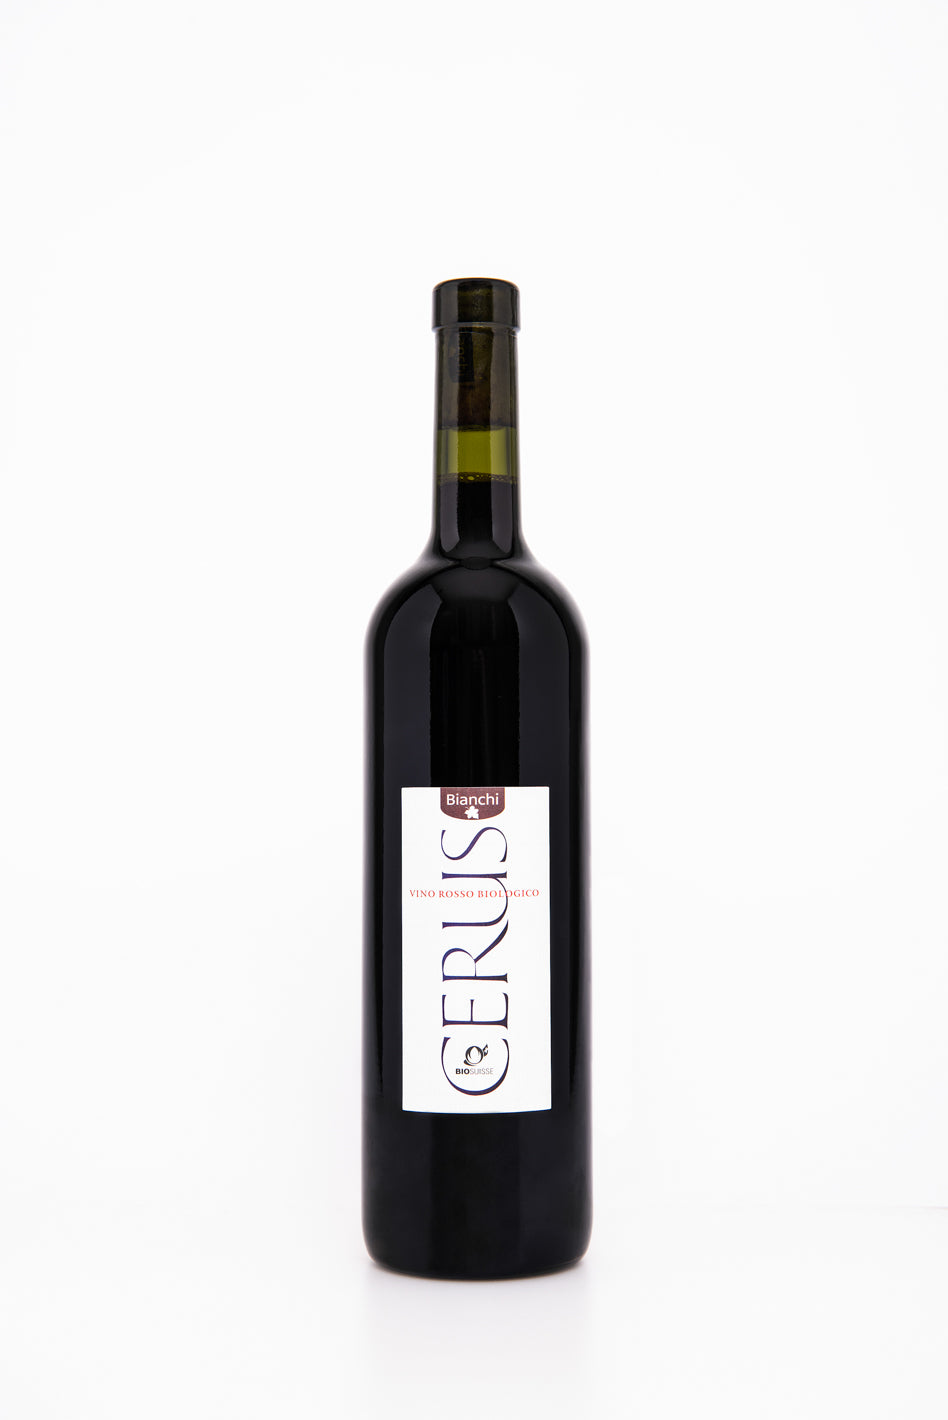 Cerus, vino rosso barricato, 2020